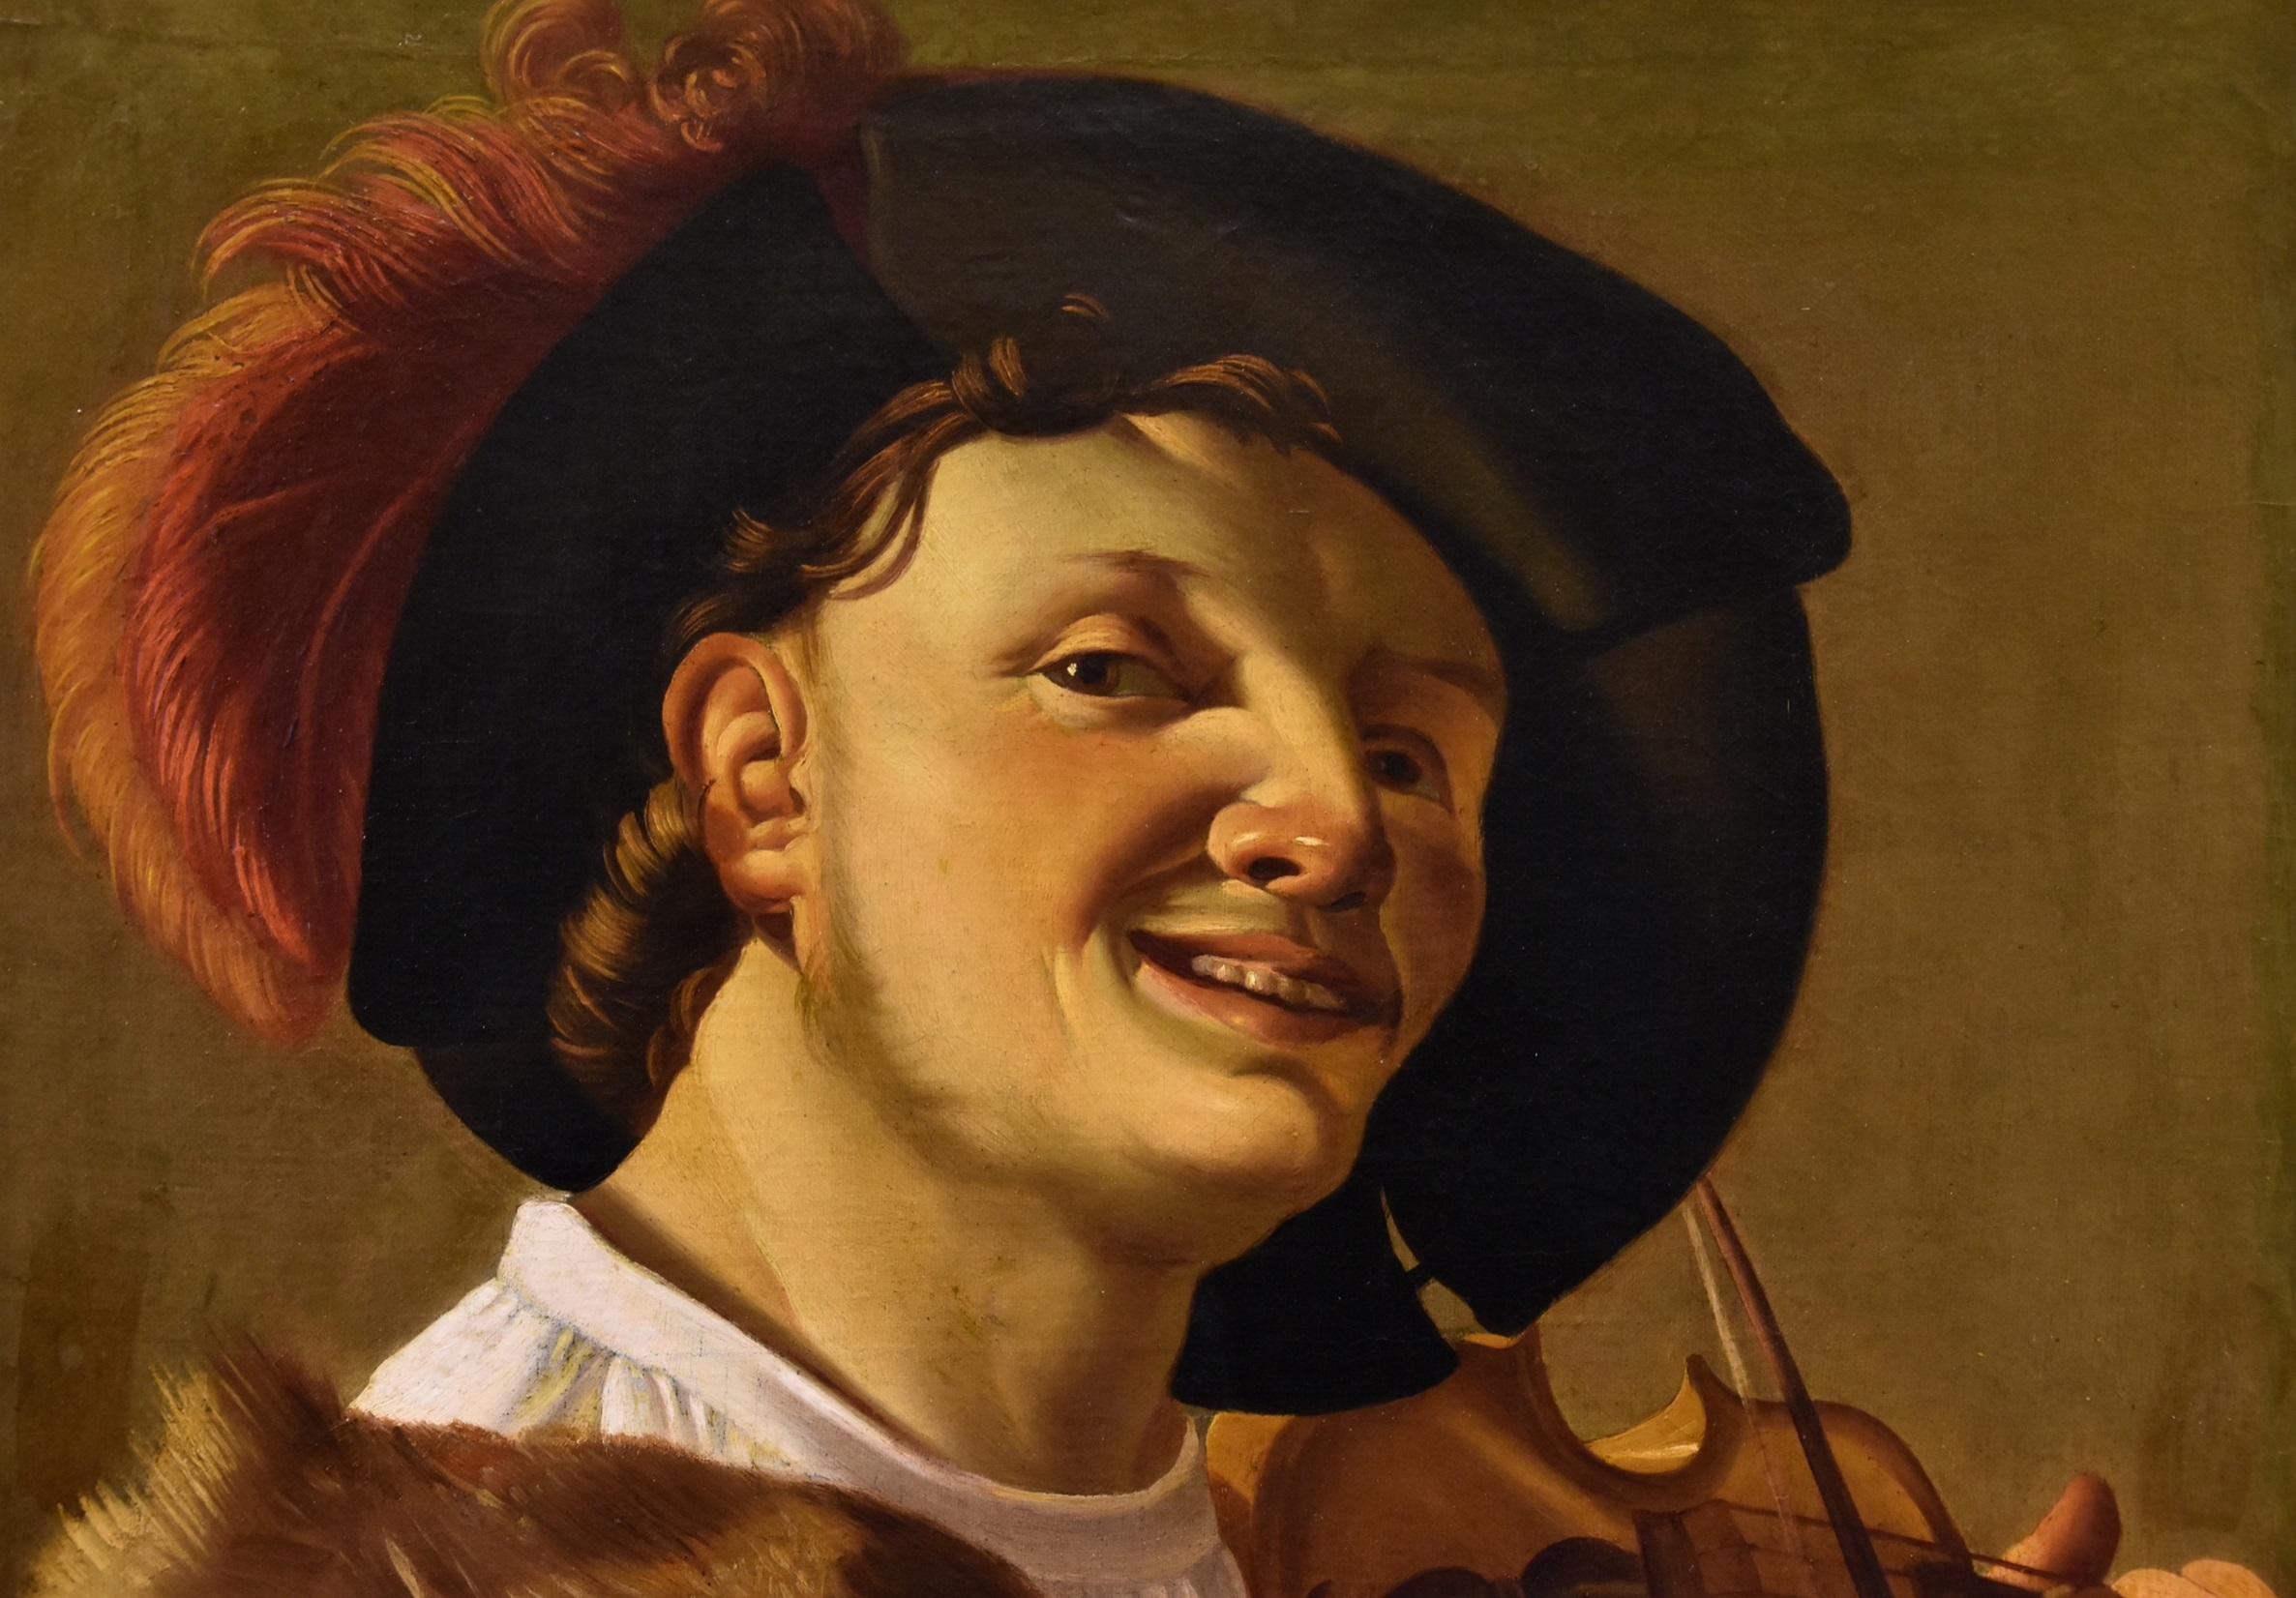 Hendrick ter Brugghen (La Haye 1588-1629 Utrecht)
Atelier

Violoniste

Huile sur toile
72 x 60 cm.
Encadré 87 x 78 cm.

L'analyse de la composition et du style de cet intéressant portrait de violoniste permet d'attribuer son exécution à l'atelier du